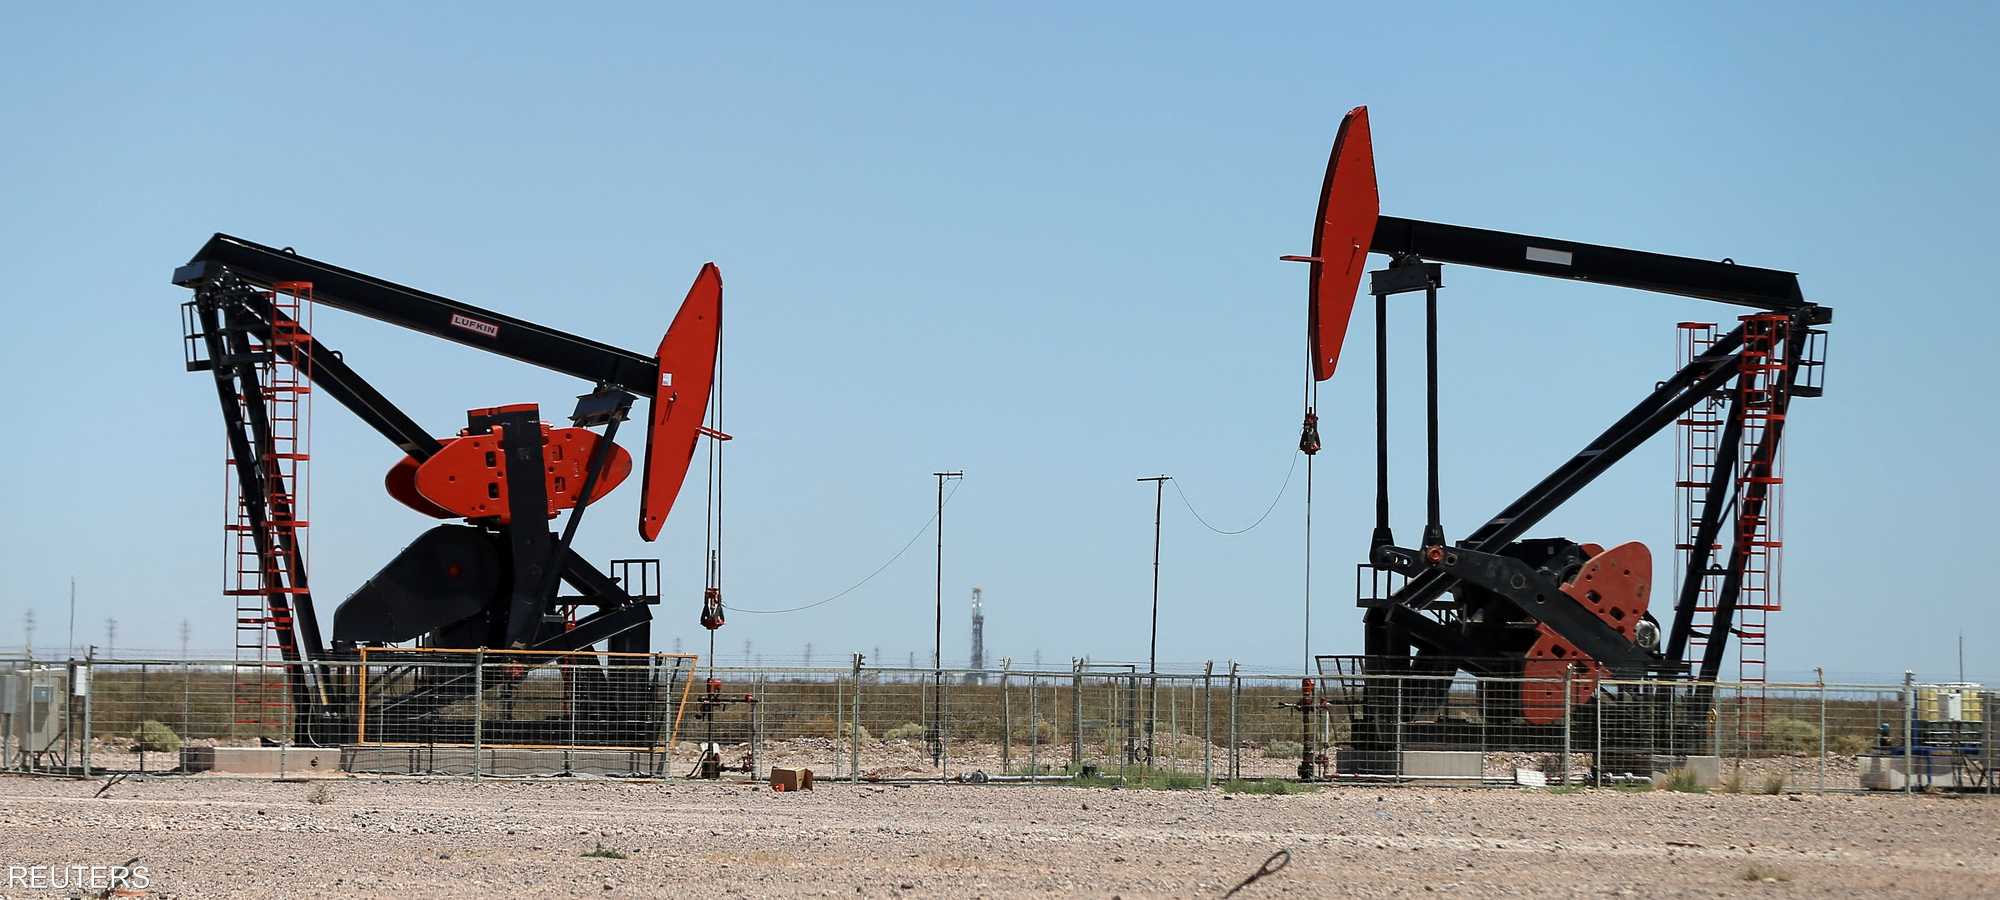 النفط يقفز بأكثر من 2% وسط توترات الشرق الأوسط